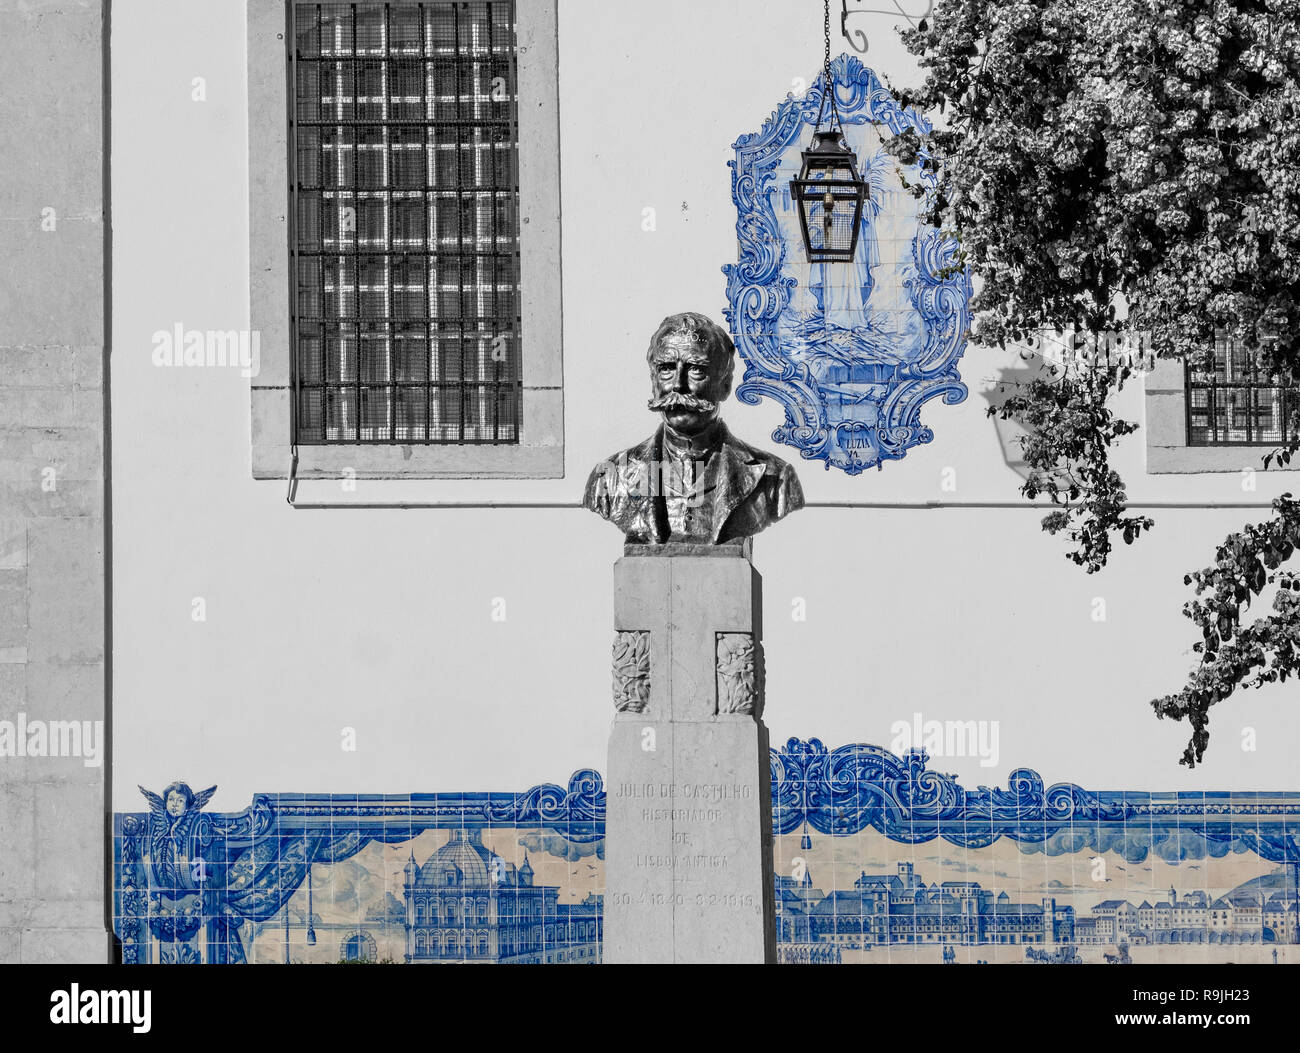 Lisbona - Portogallo. scene delle Lisbona del 1700 realizzate sul muro di una chiesa con piastrelle colorate (azulejos). Stock Photo